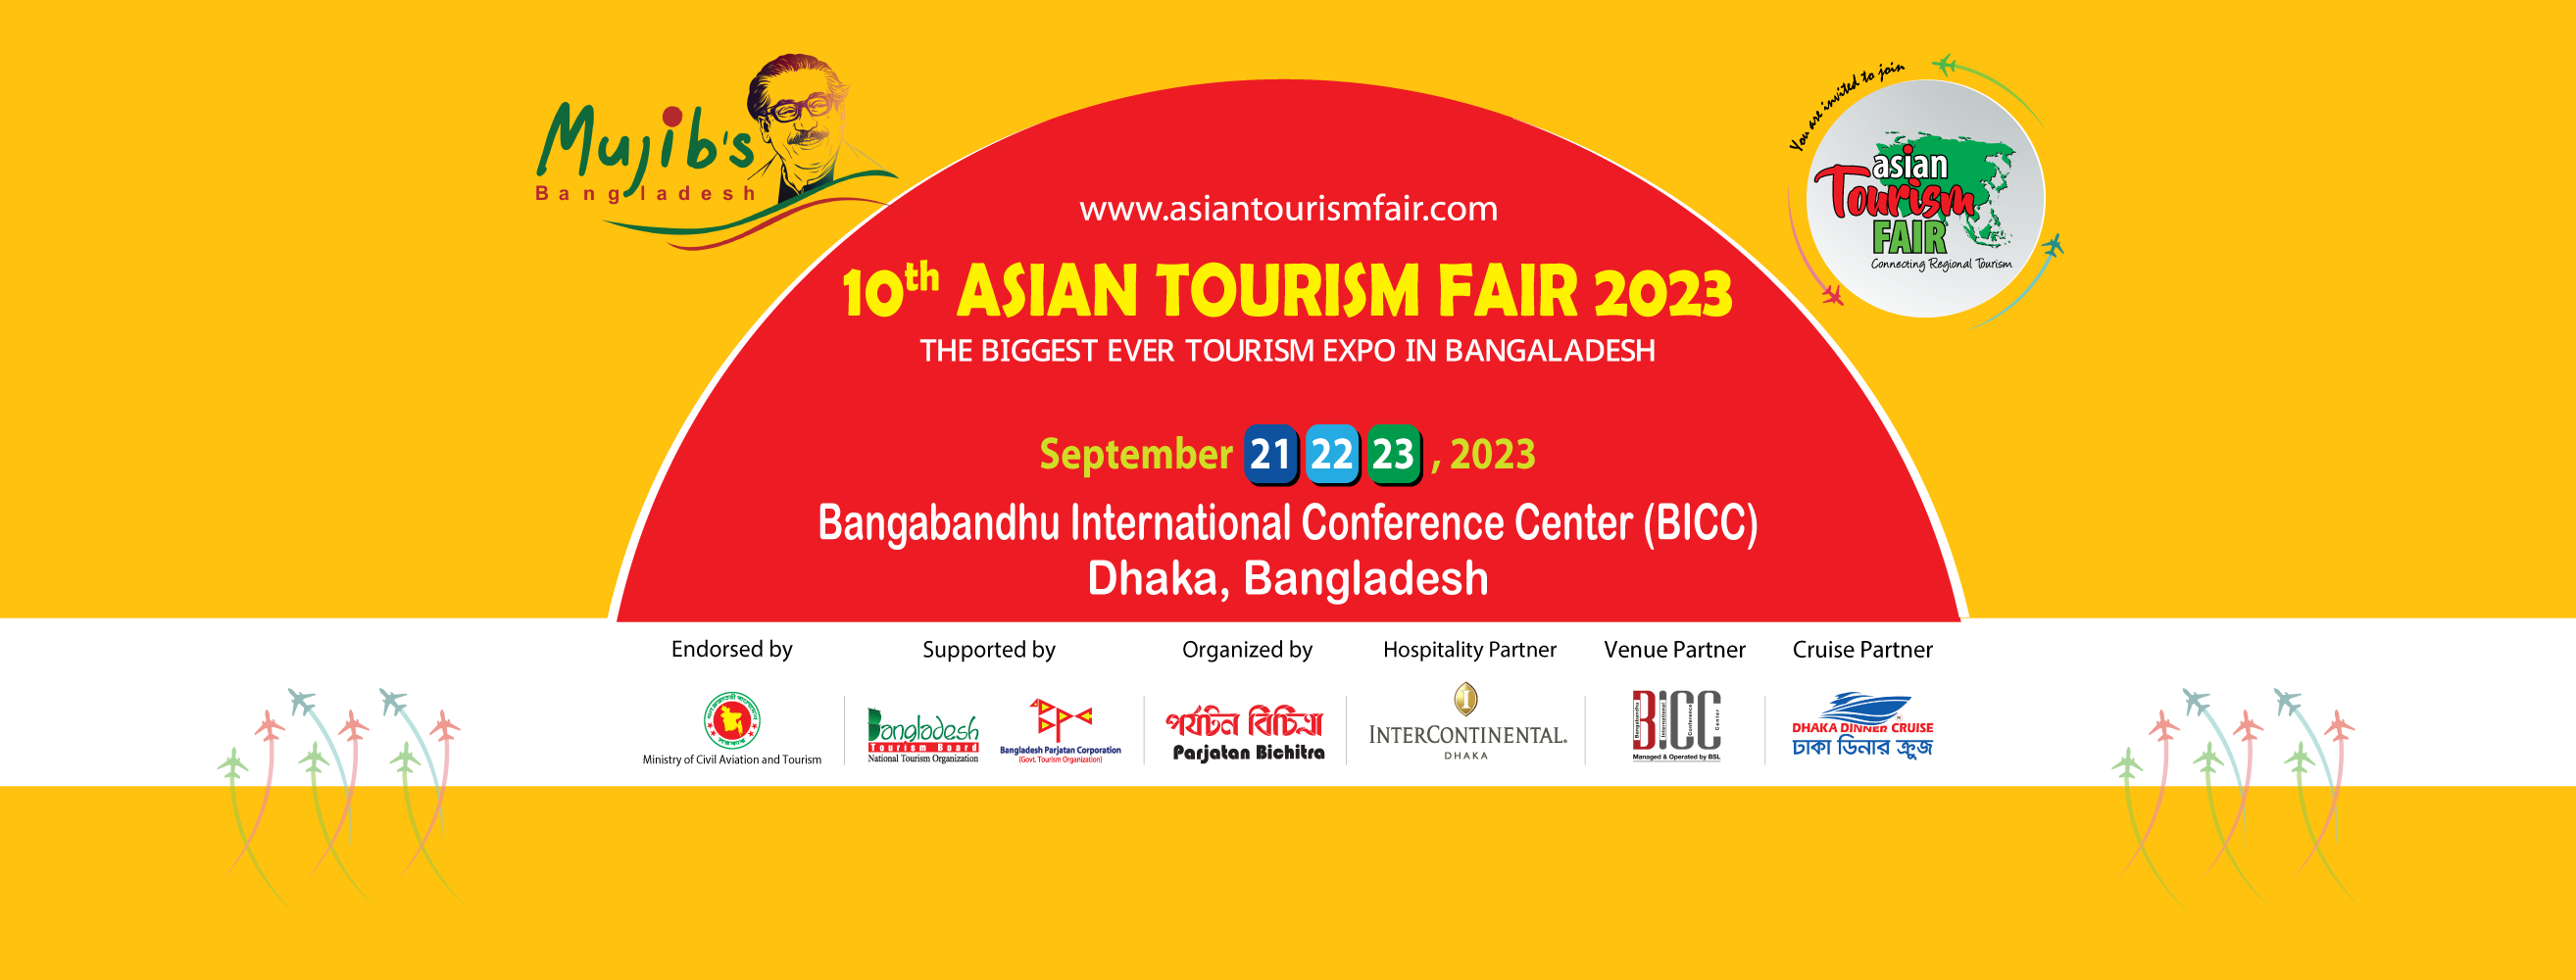 asian tourism fair 2023 venue